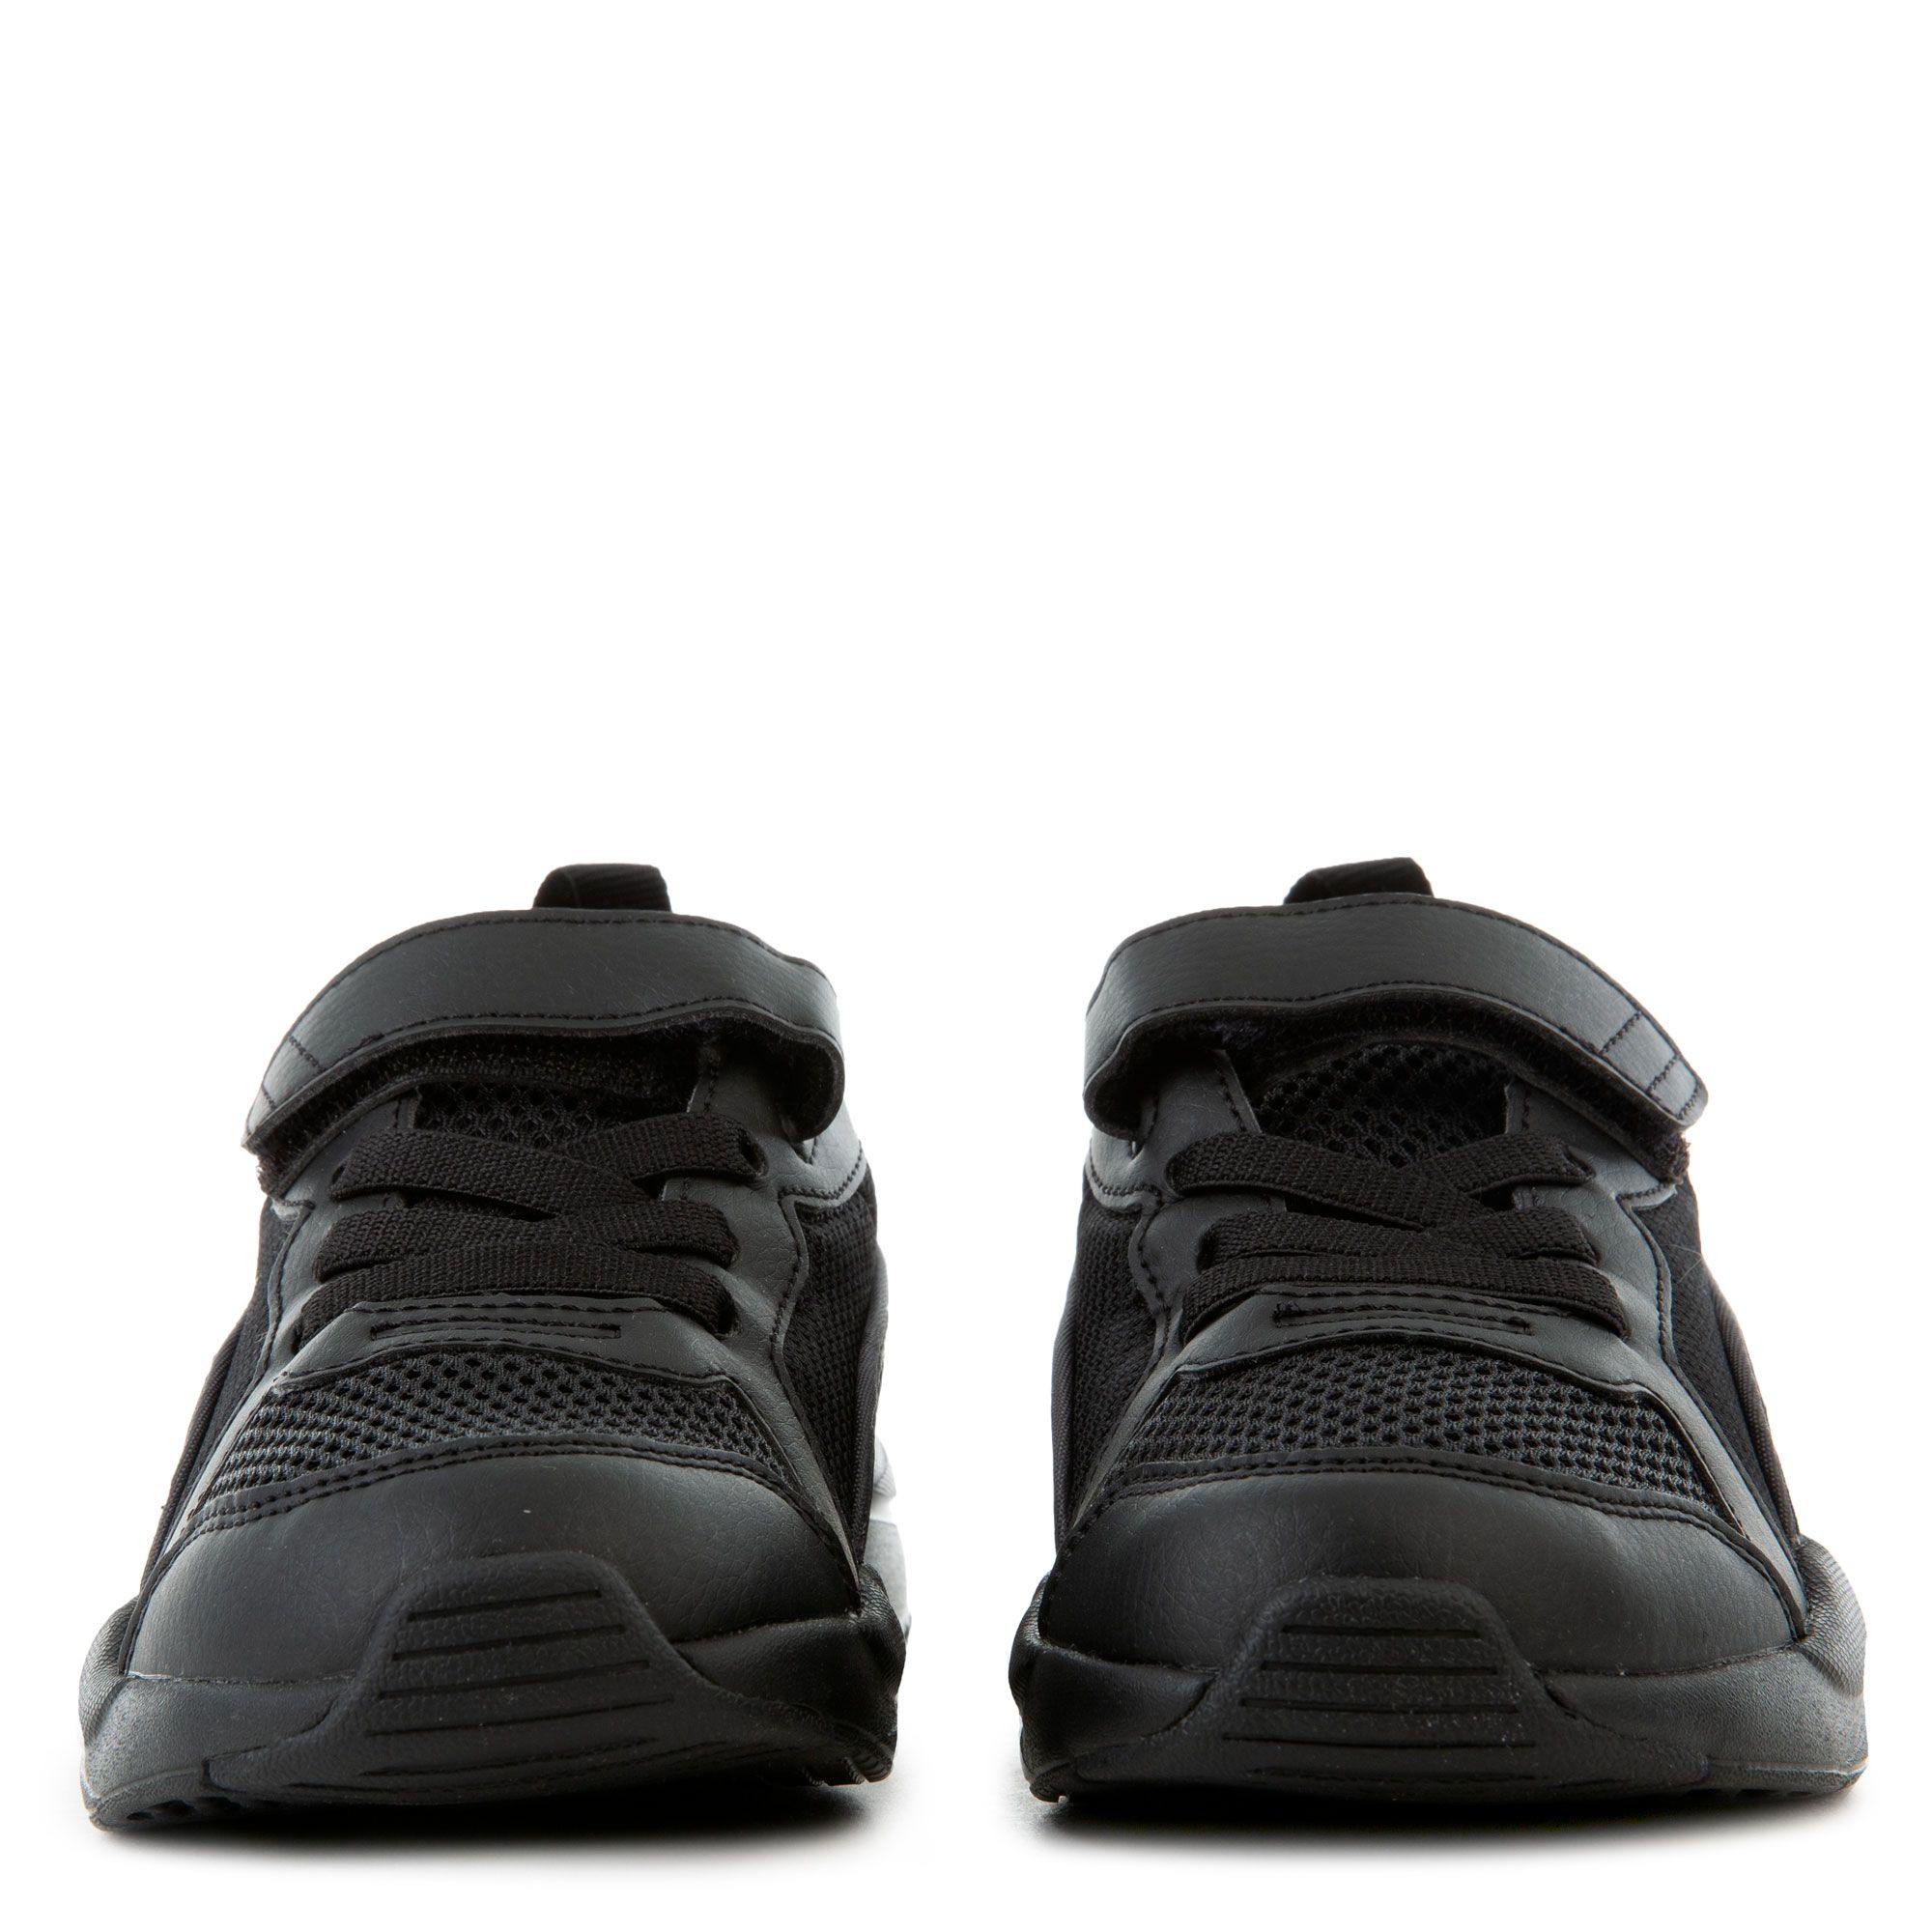 P-N37 (X-Ray ac ps Children puma black/dark shadow) 121993500 - Otahuhu Shoes